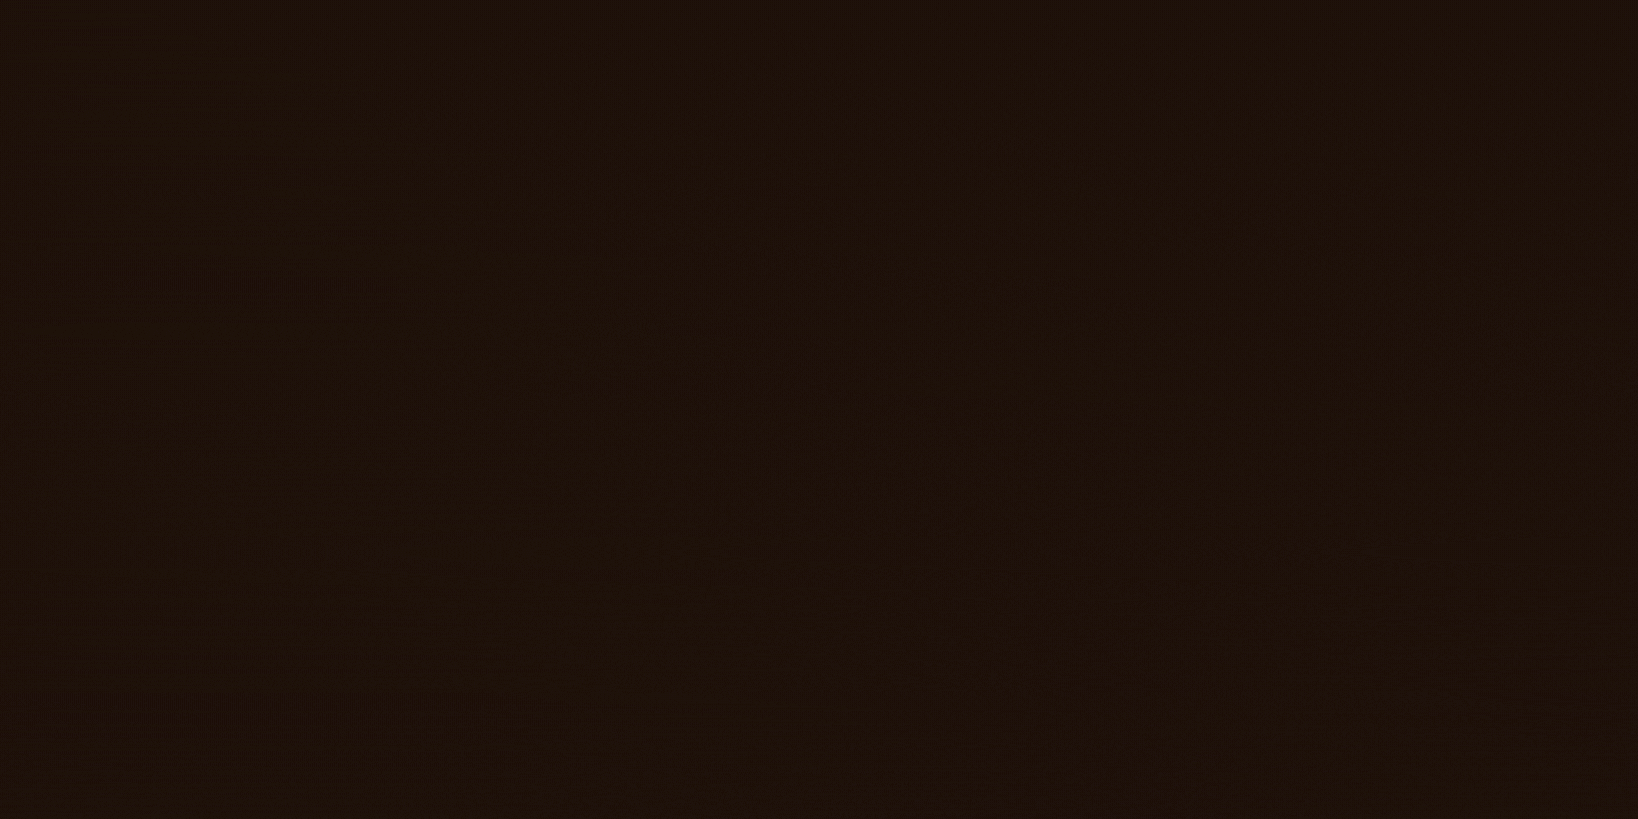 Adsız (2048 × 1024 piksel) (10)